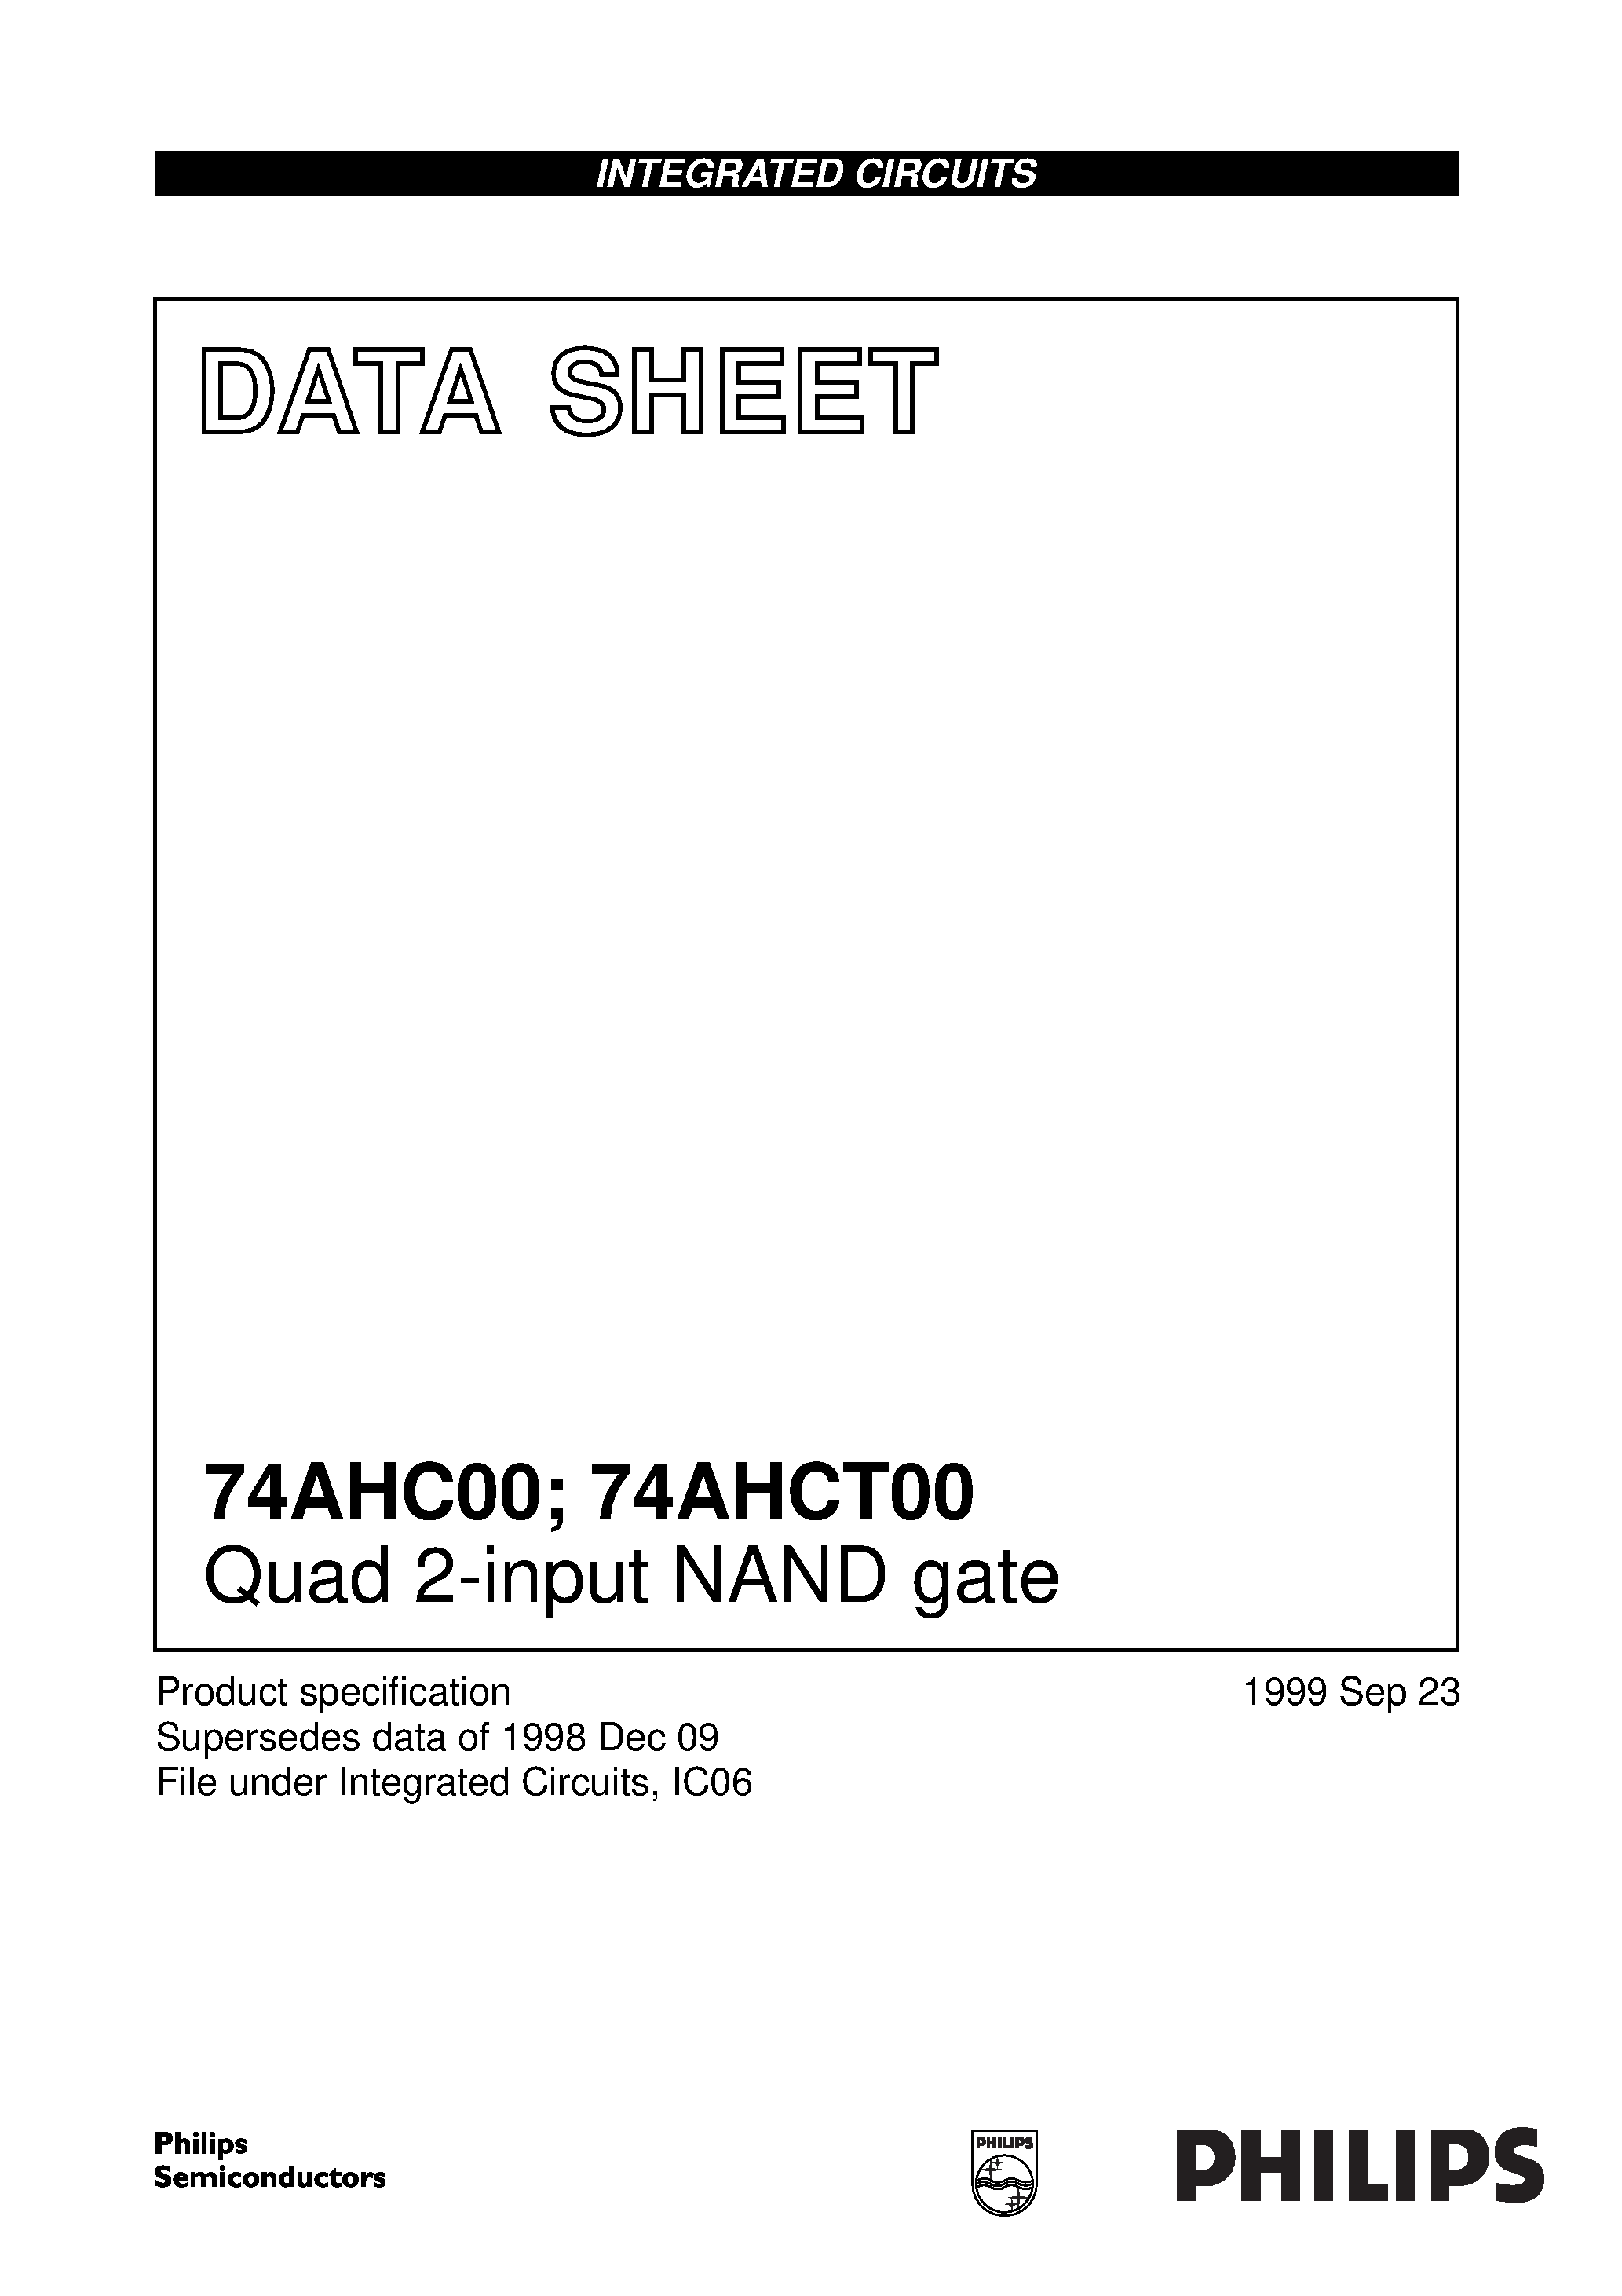 Даташит 74AHC00PWDH - Quad 2-input NAND gate страница 1